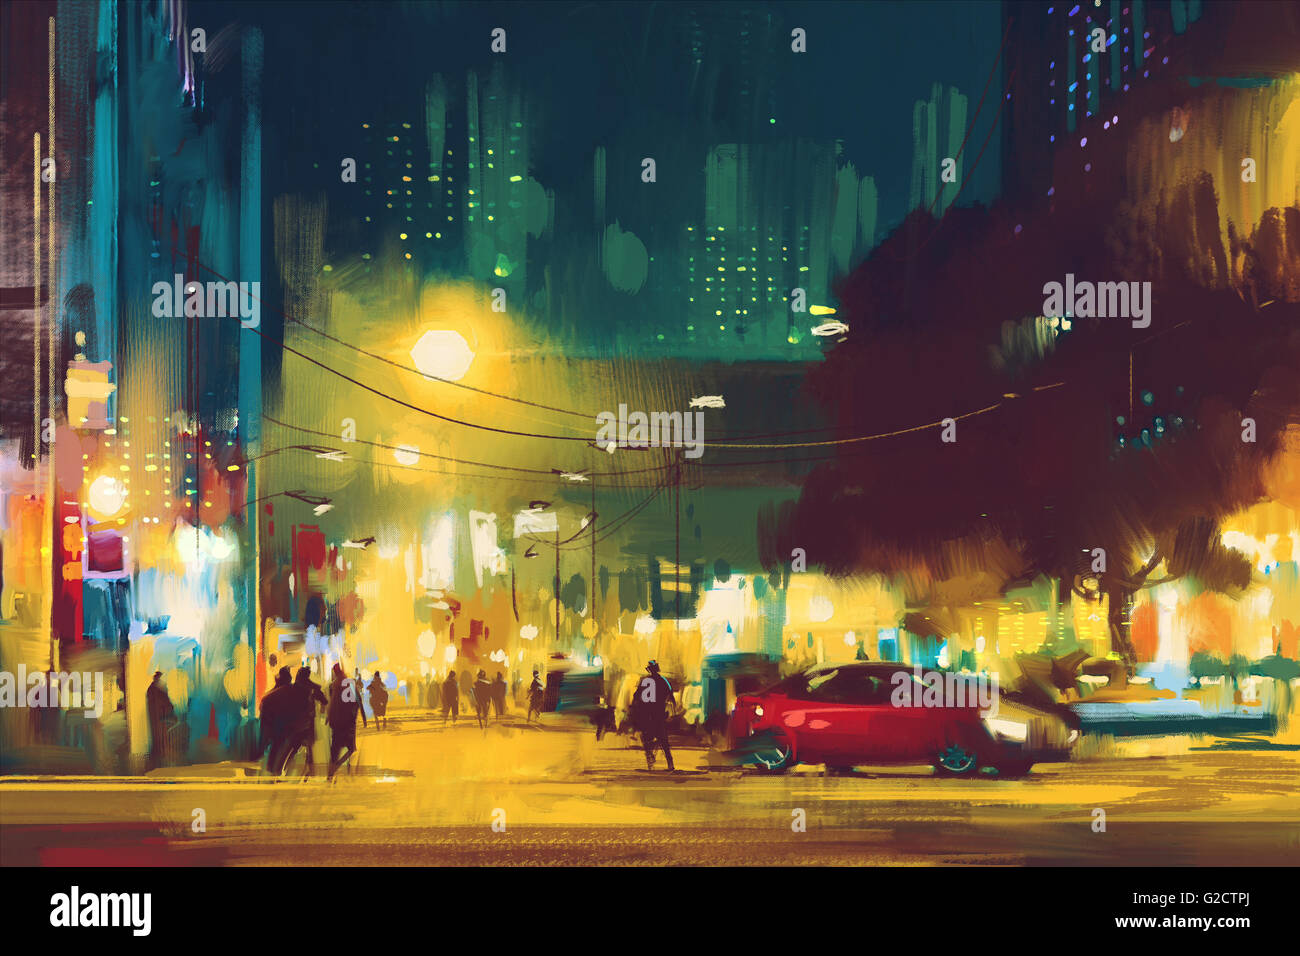 Scène de nuit de la ville à l'allumage,illustration art Banque D'Images